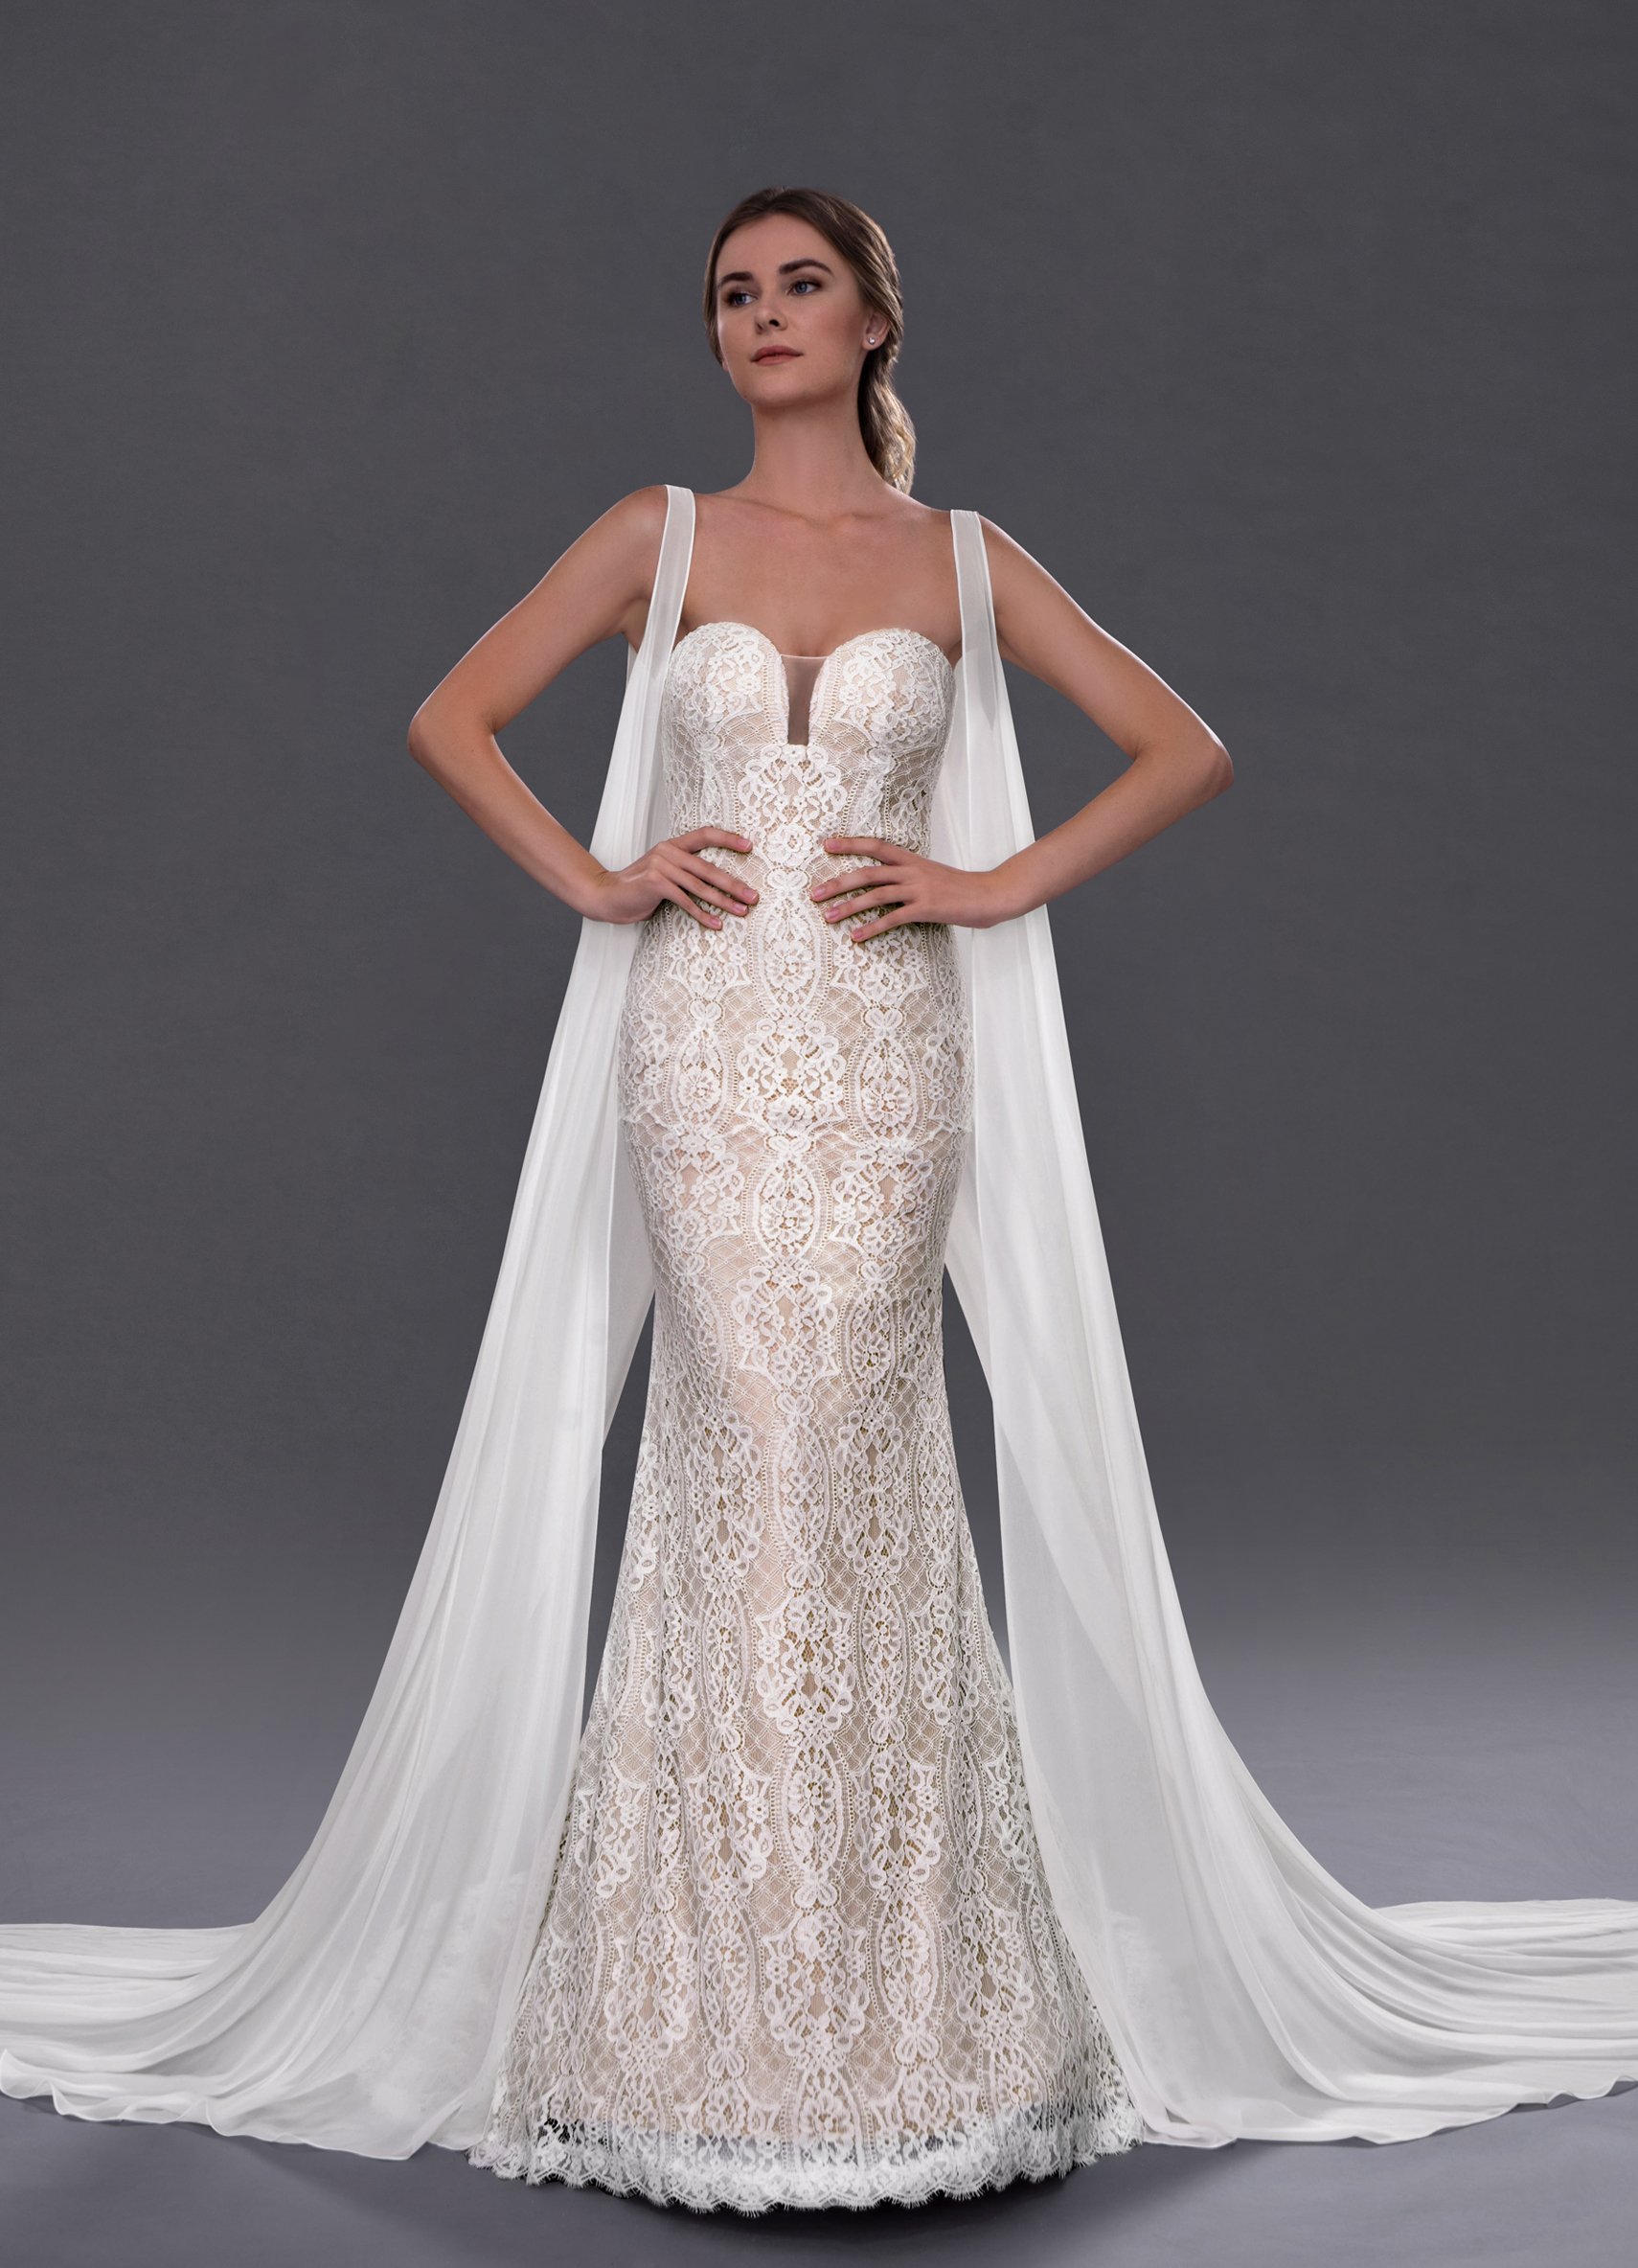 50 Pretty Fall Wedding Dresses 2020 Ideas Wedding Dream